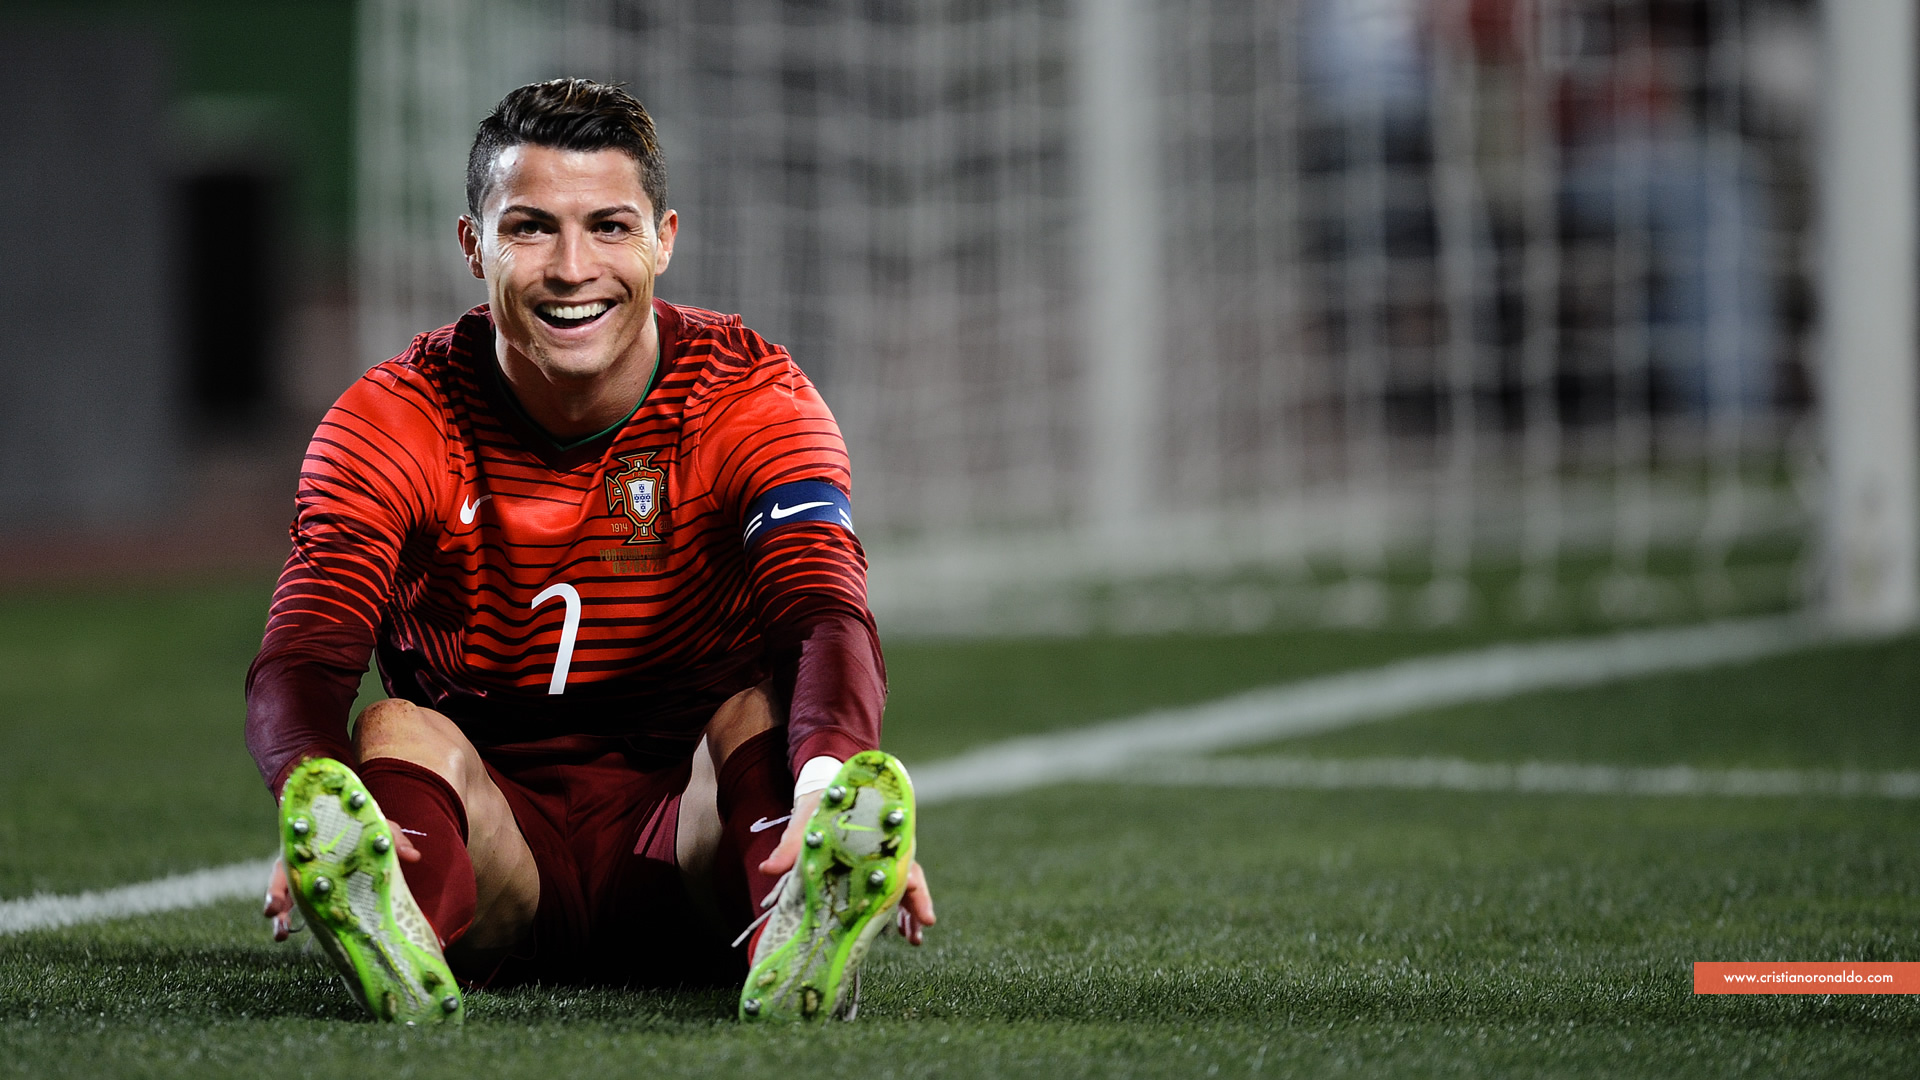 Cristiano Ronaldo smiling in Portugal jersey wallpaper